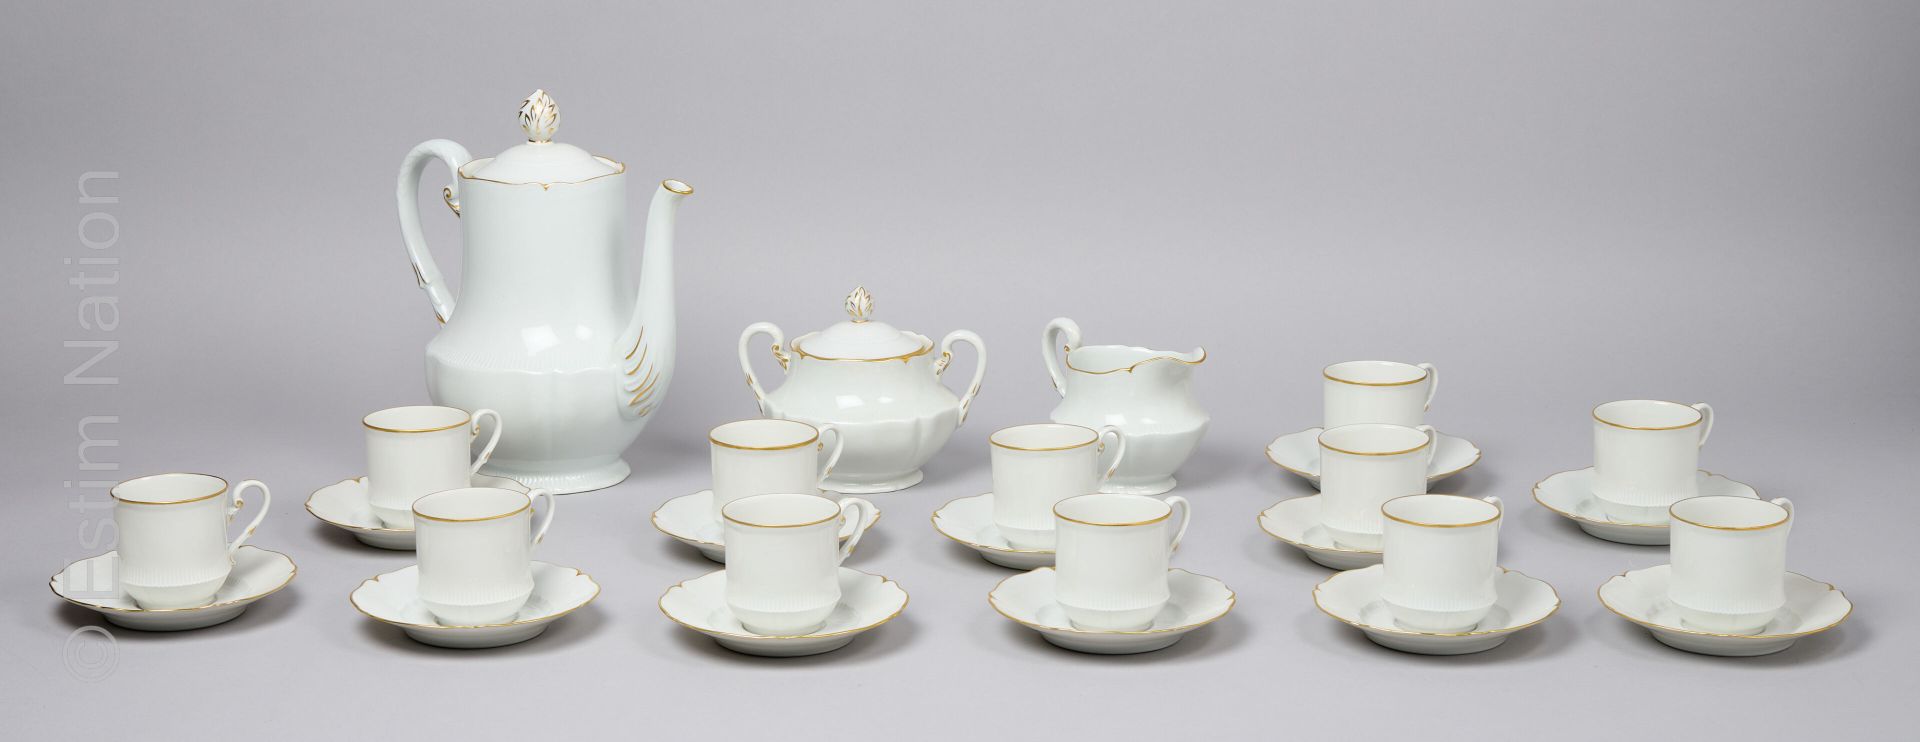 PORCELAINES FRANCAISES - HAVILAND HAVILAND - LIMOGES

Coffee set in porcelain wi&hellip;